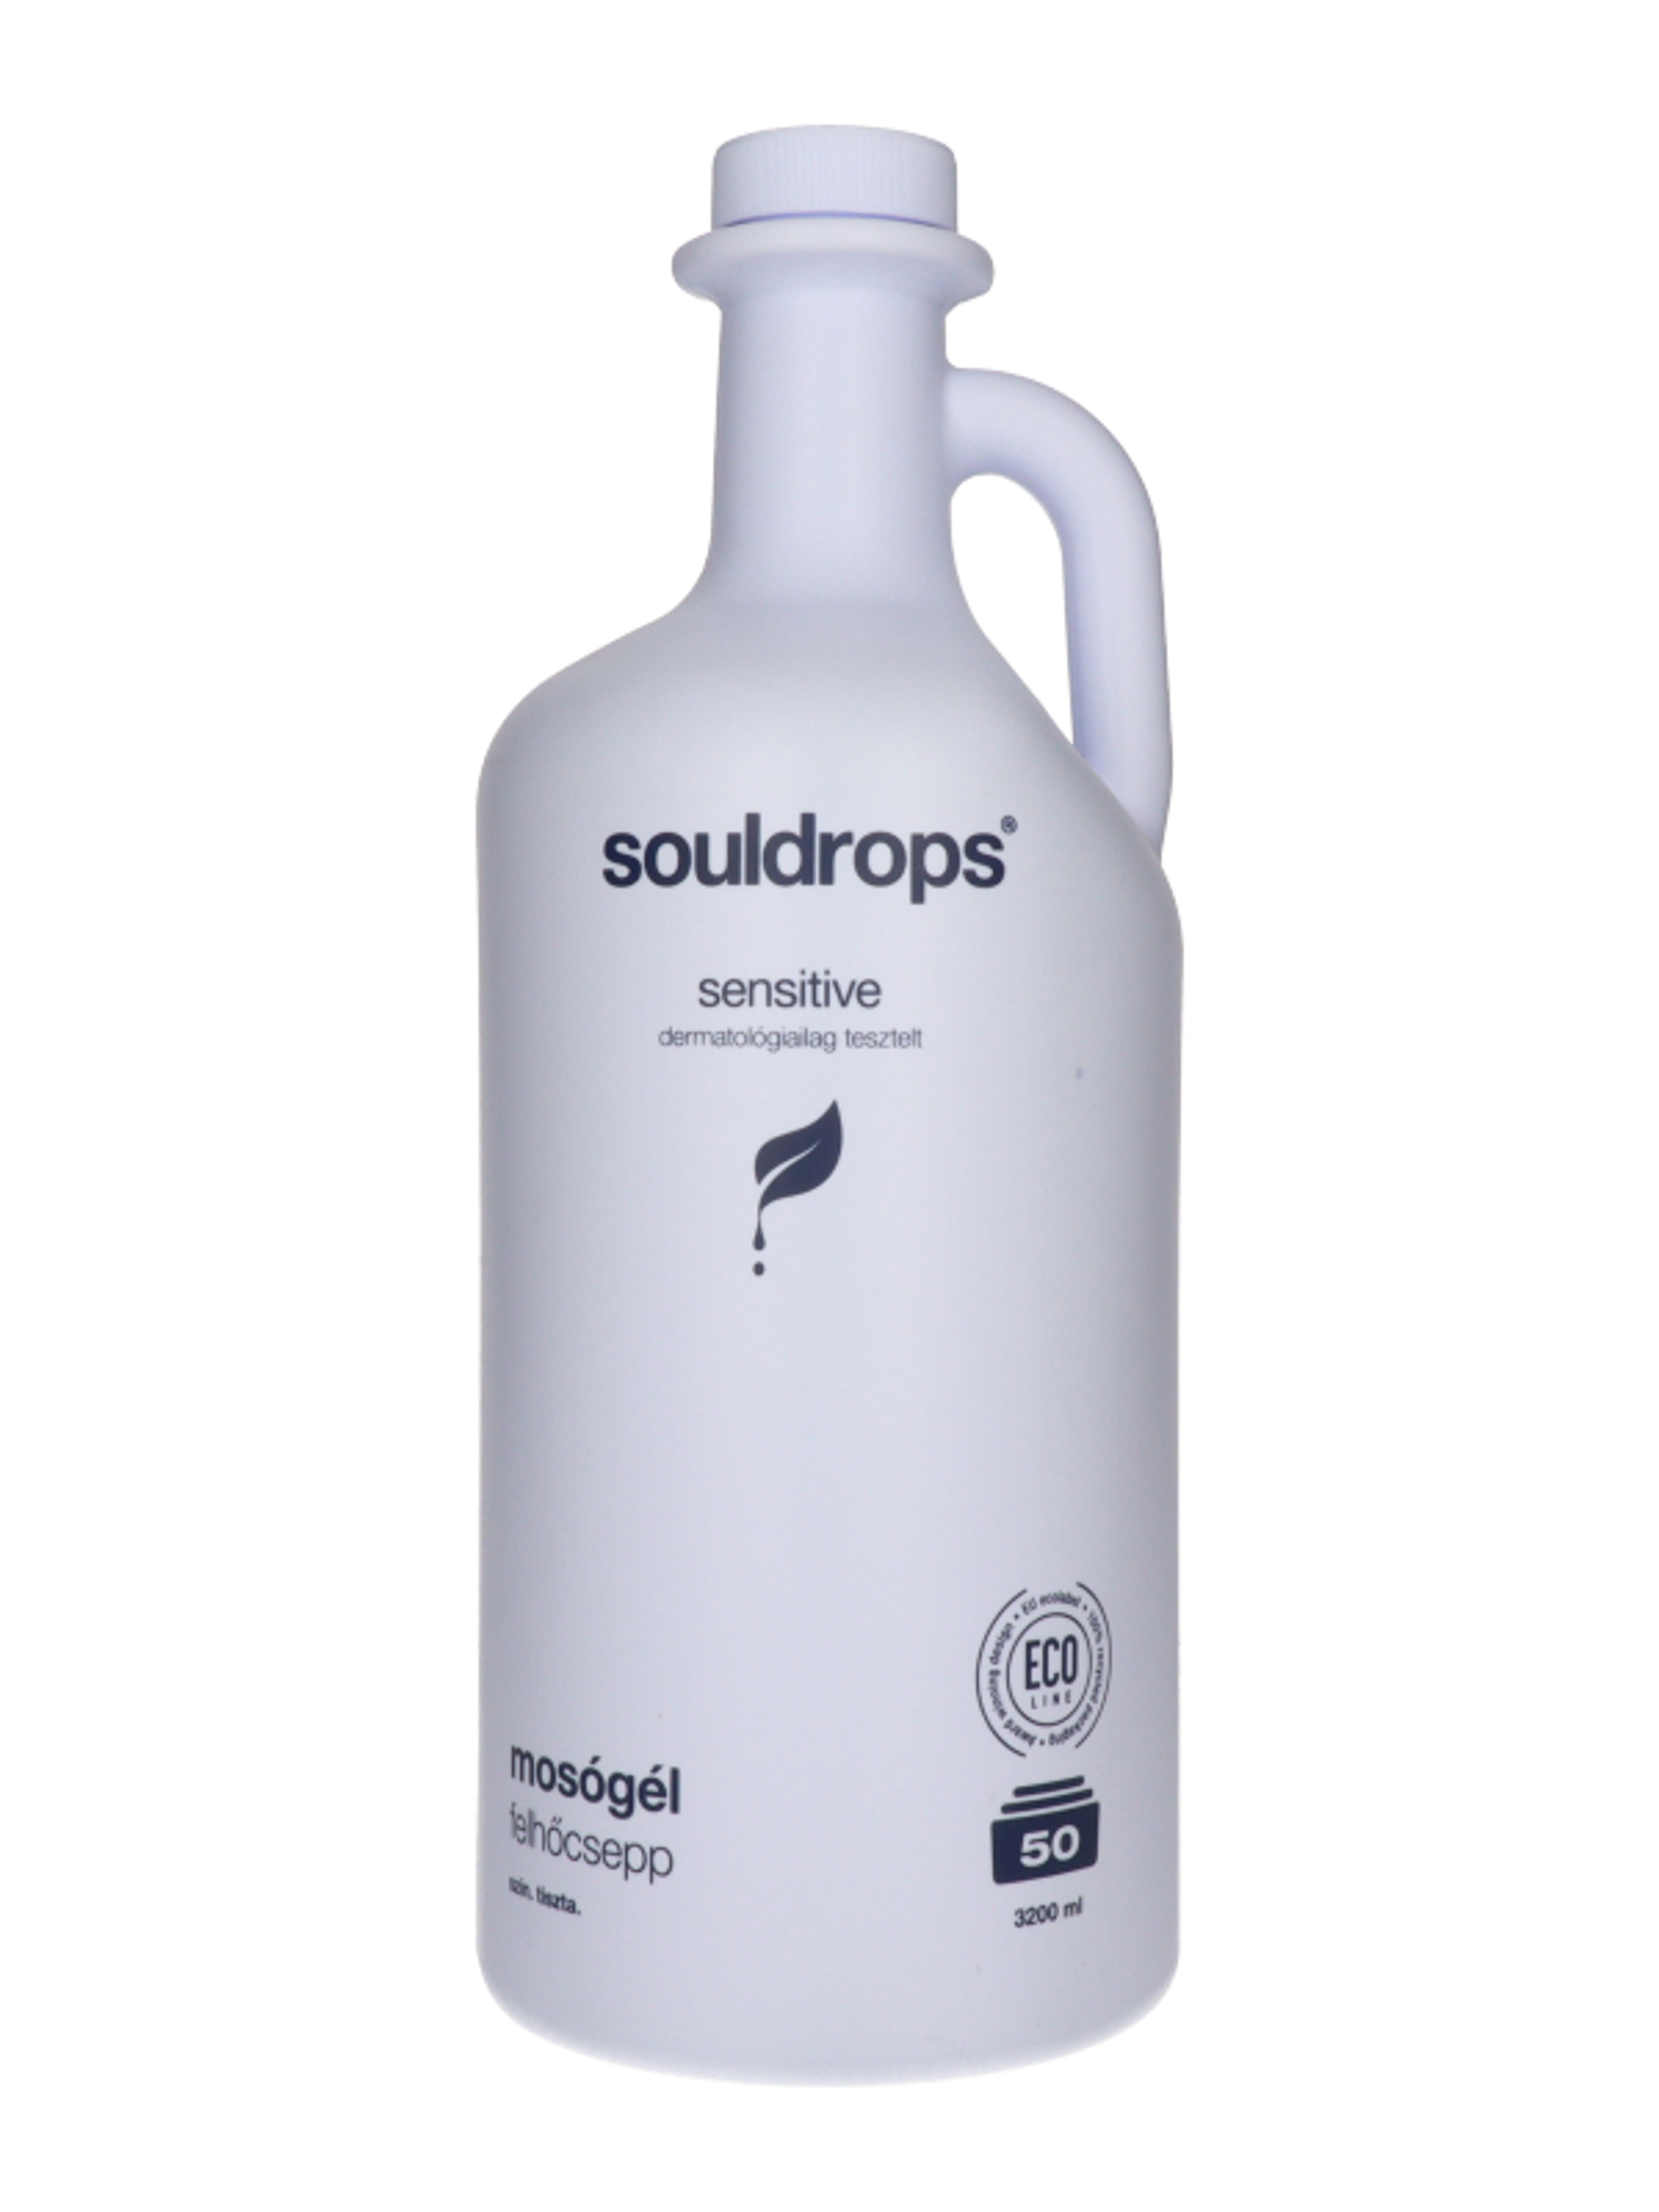 Souldrops Felhőcsepp szenzitív mosógél 50 mosás - 3200 ml-3